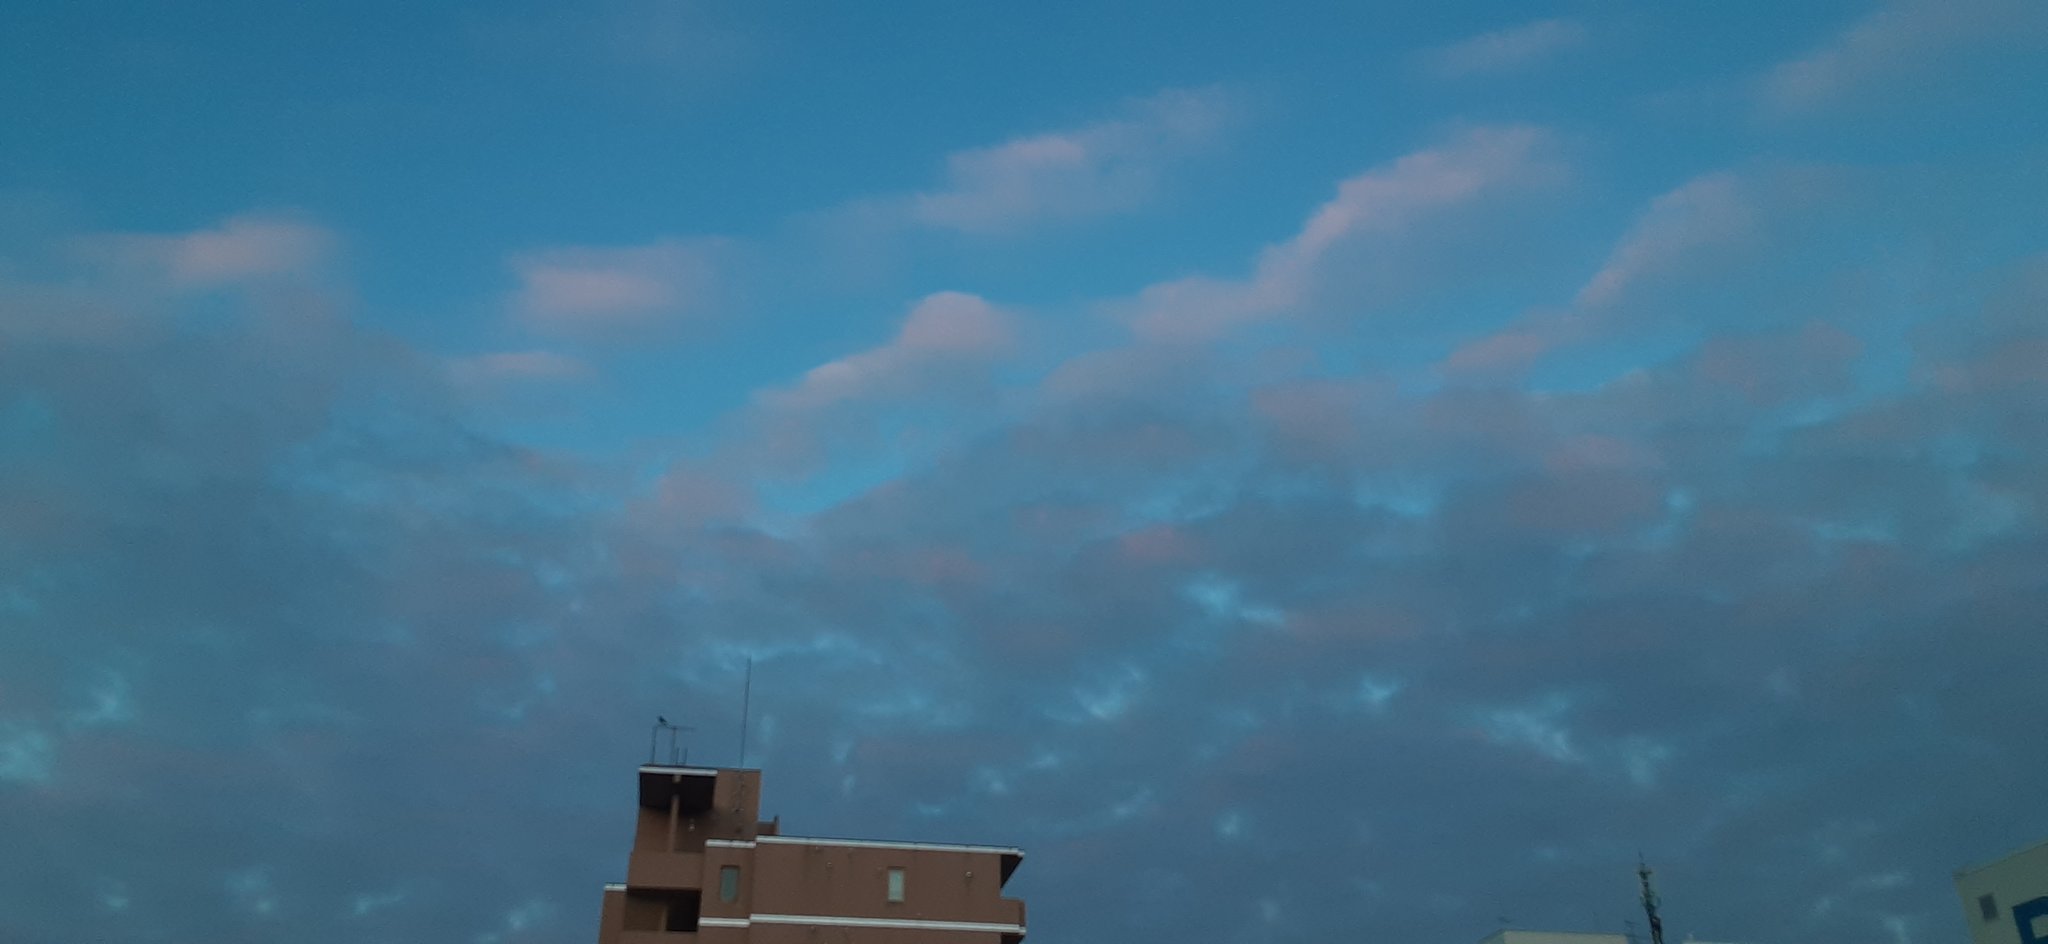 さなえ やっぱイラストっぽいね 青空 雲 きれい 綺麗 なんかいいなと思ったらrtいいね 朝は烏じゃなくて雀がいいなぁ T Co L3wtcmf8oj Twitter